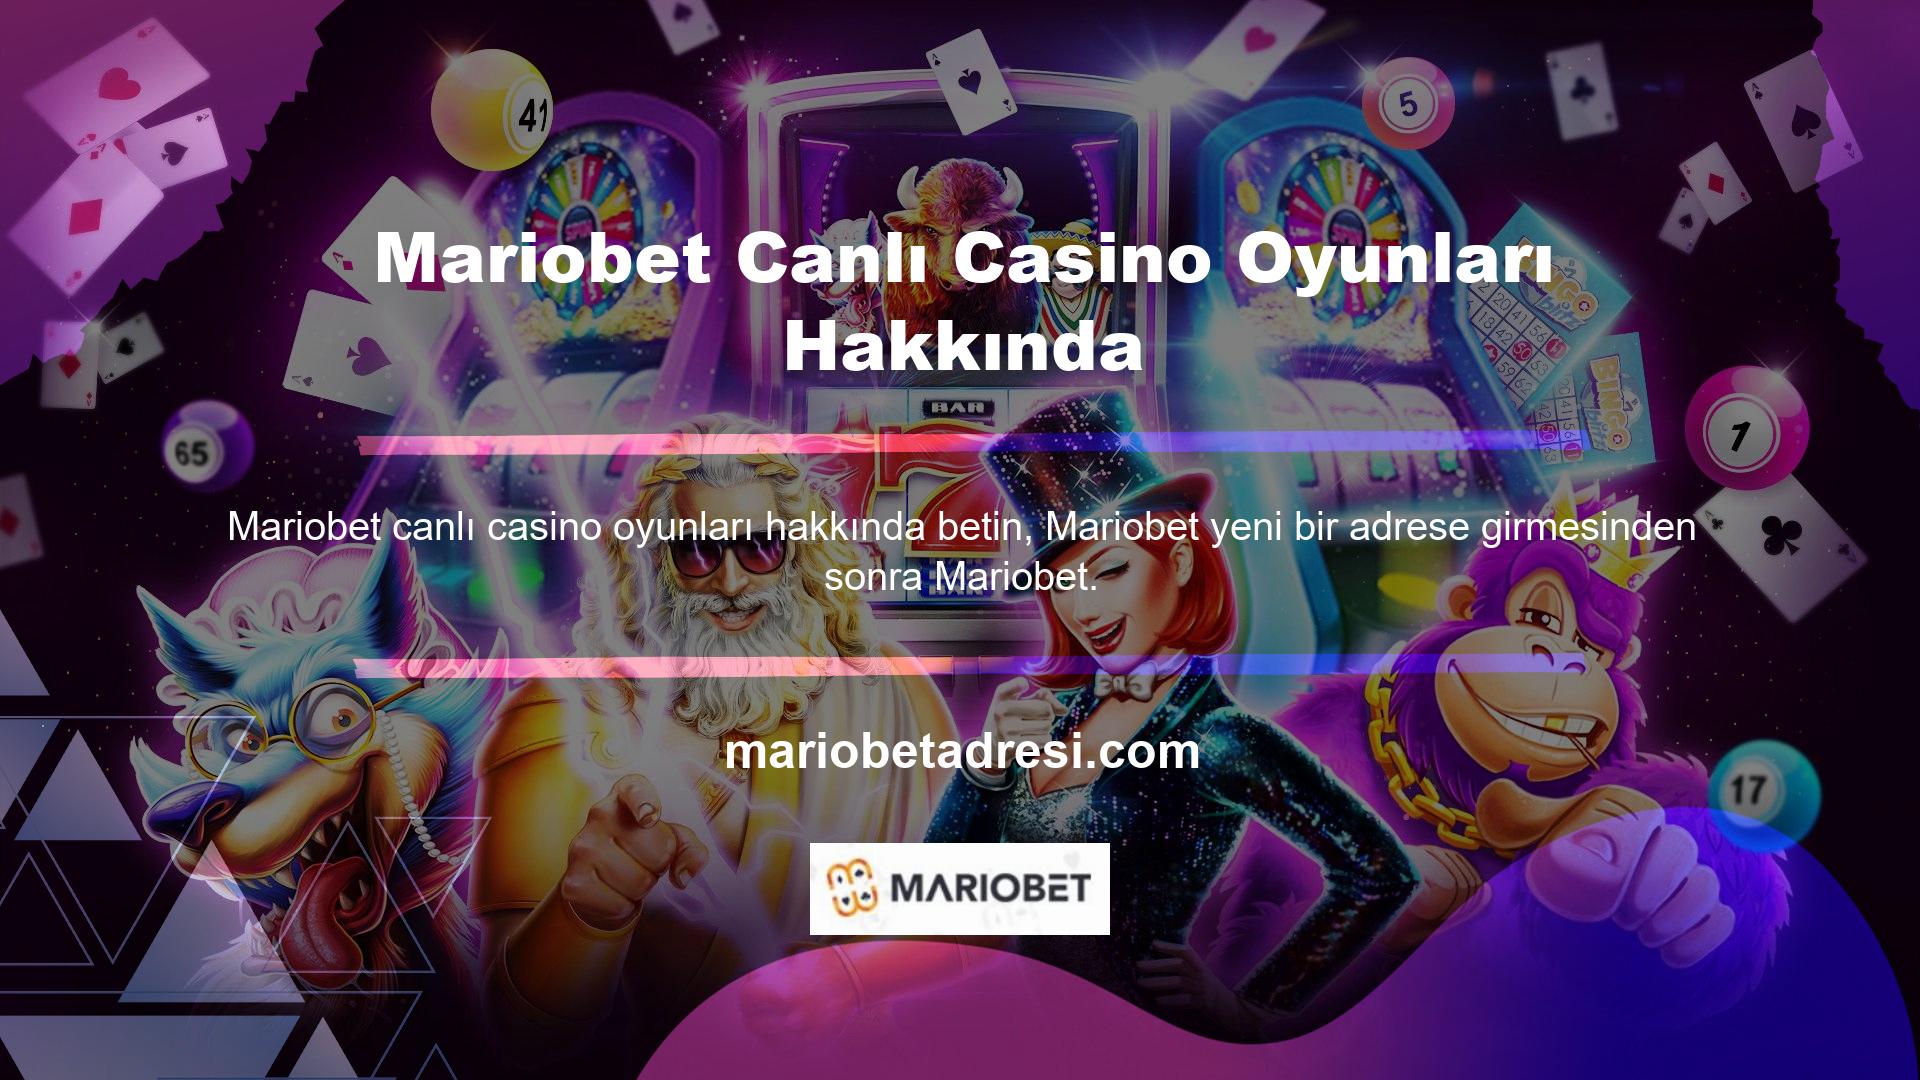 com olarak yoluna devam edecek ve Mariobet Canlı Casino ve Canlı Oyunlar bölümüne yeniden açılacak ve kullanıcılara oyun oynama olanağı sunan bir çevrimiçi bahis sitesidir